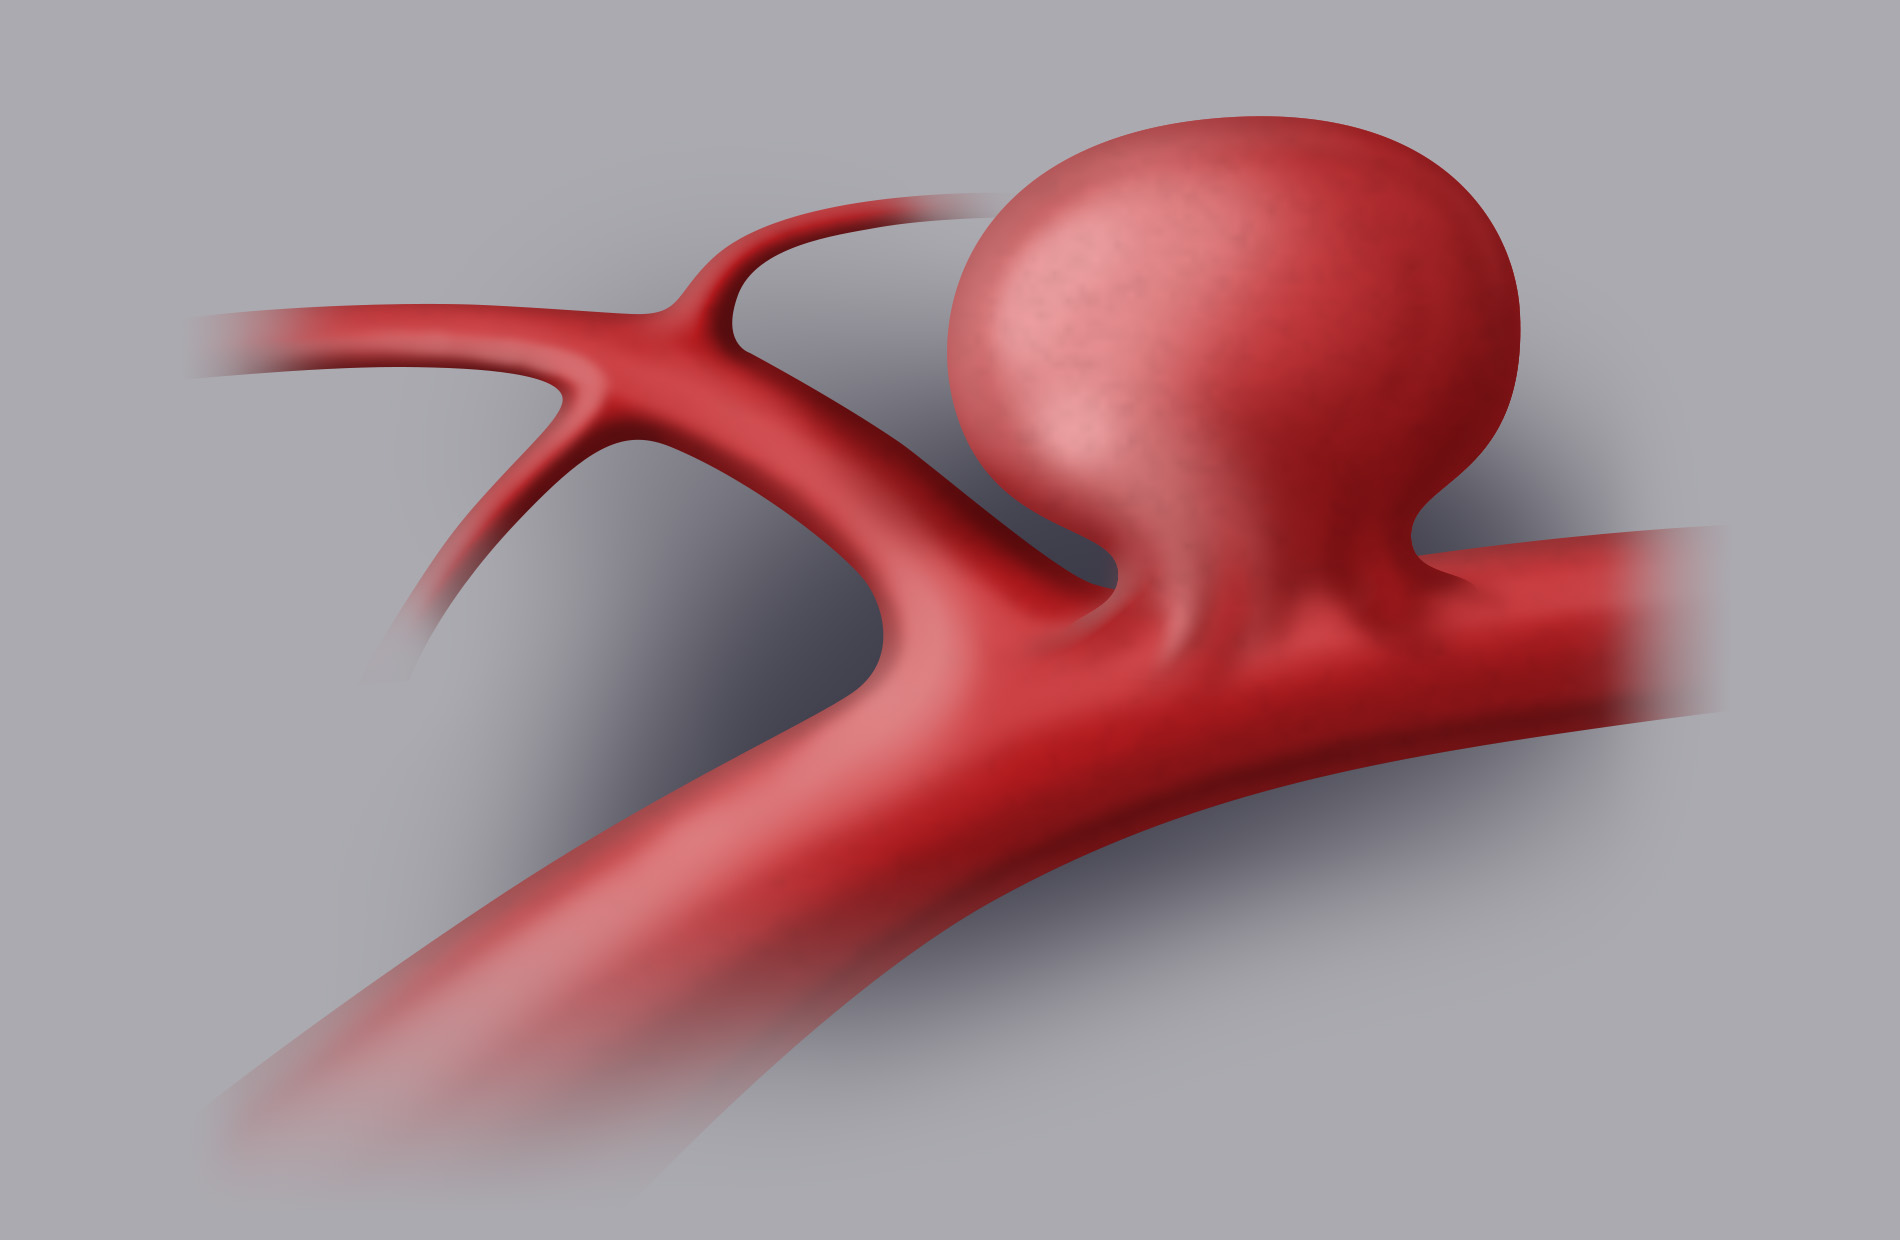 L’aneurisma è una dilatazione circoscritta di un’arteria cerebrale, a forma di palloncino, che si riscontra solitamente nei tratti in cui le arterie si biforcano.